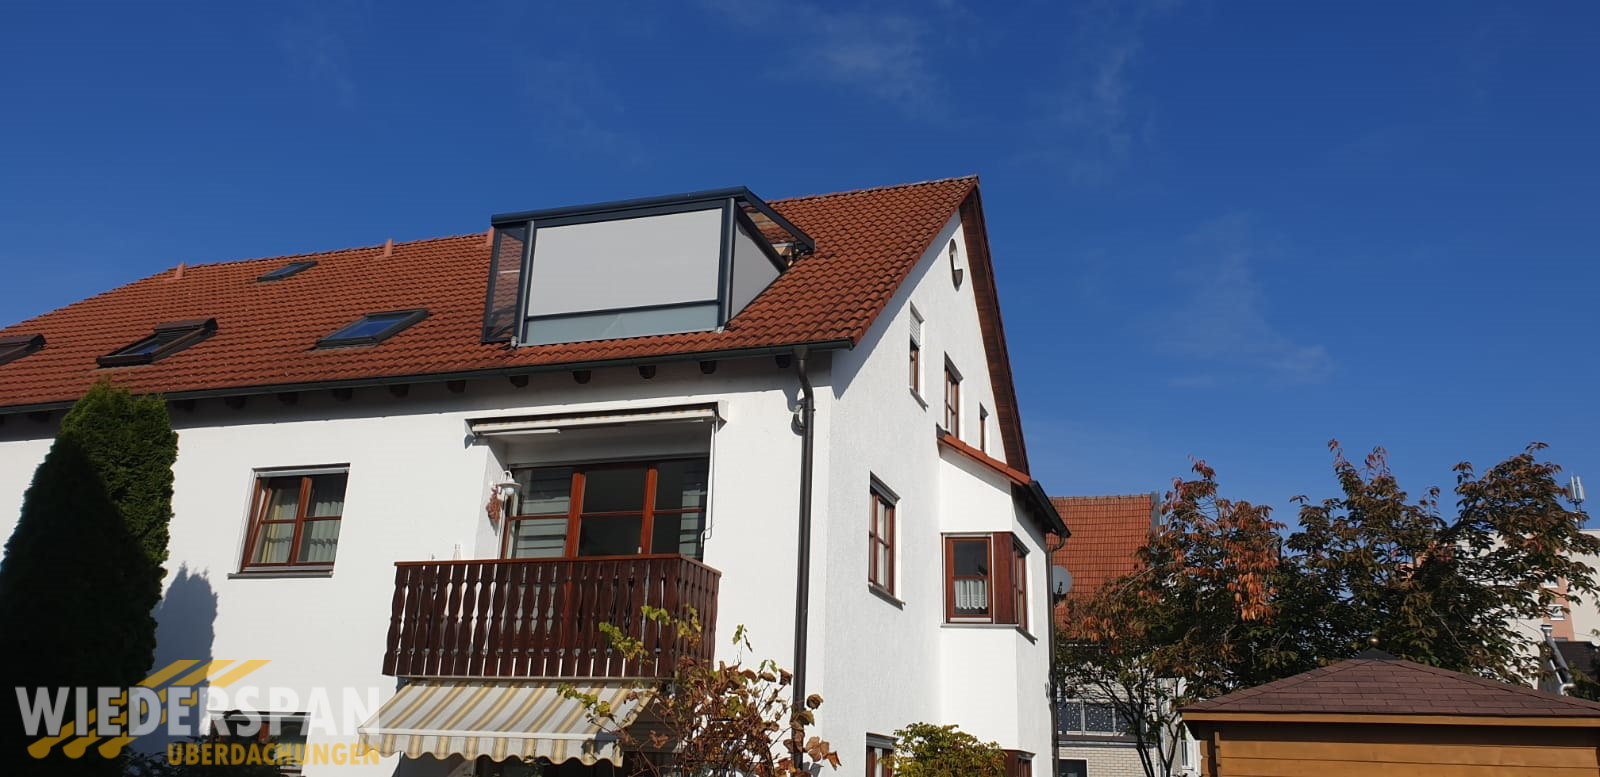 Überdachung im Dachgeschoss, Festelemente, Sichtschutz, Augsburg